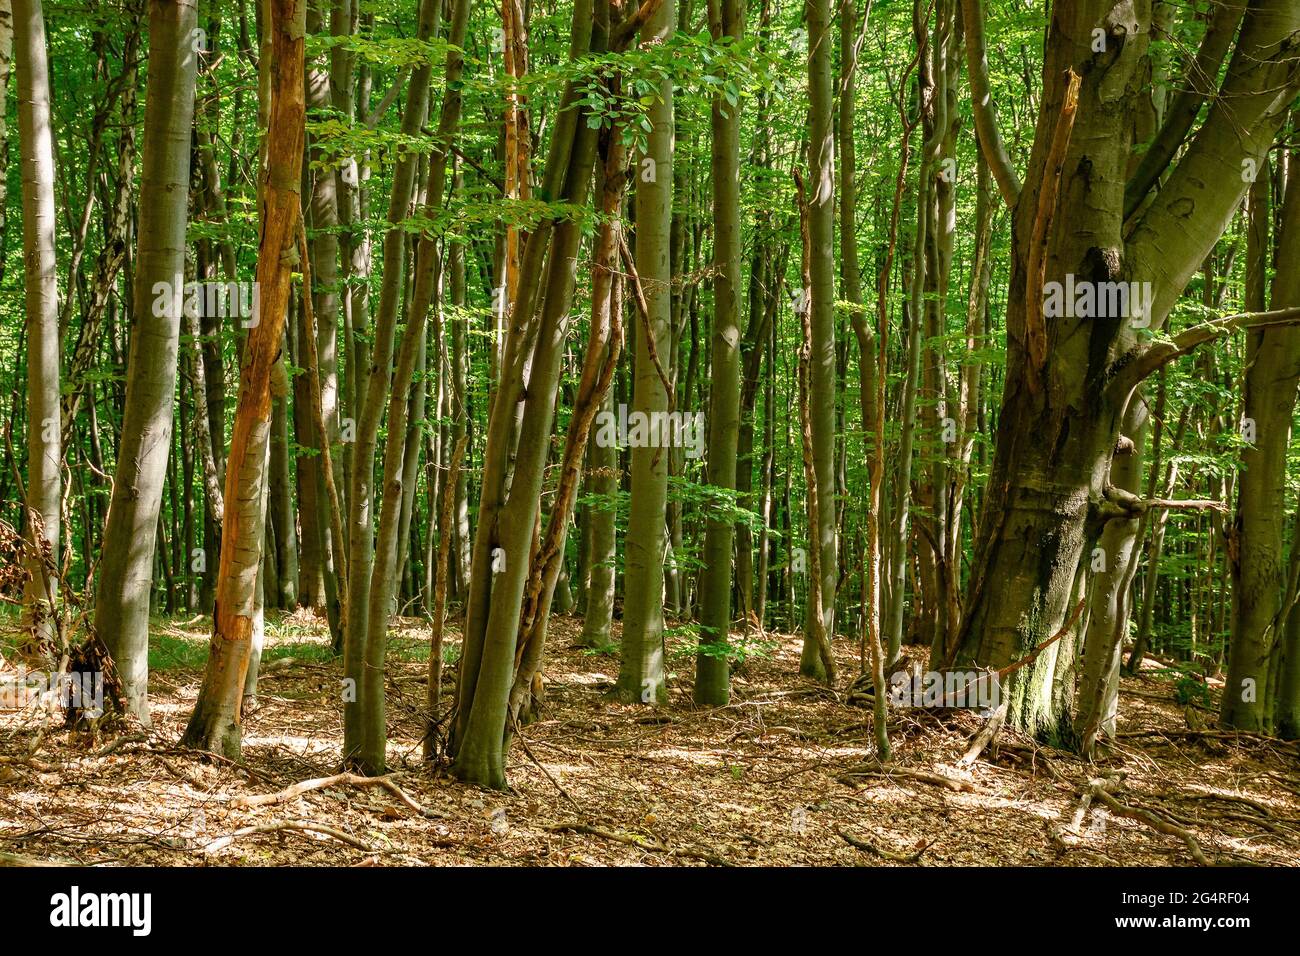 Buchenwaldlandschaft im Sommer. Schöne Natur im Freien an einem sonnigen Tag. Hohe Bäume in grünem Laub Stockfoto